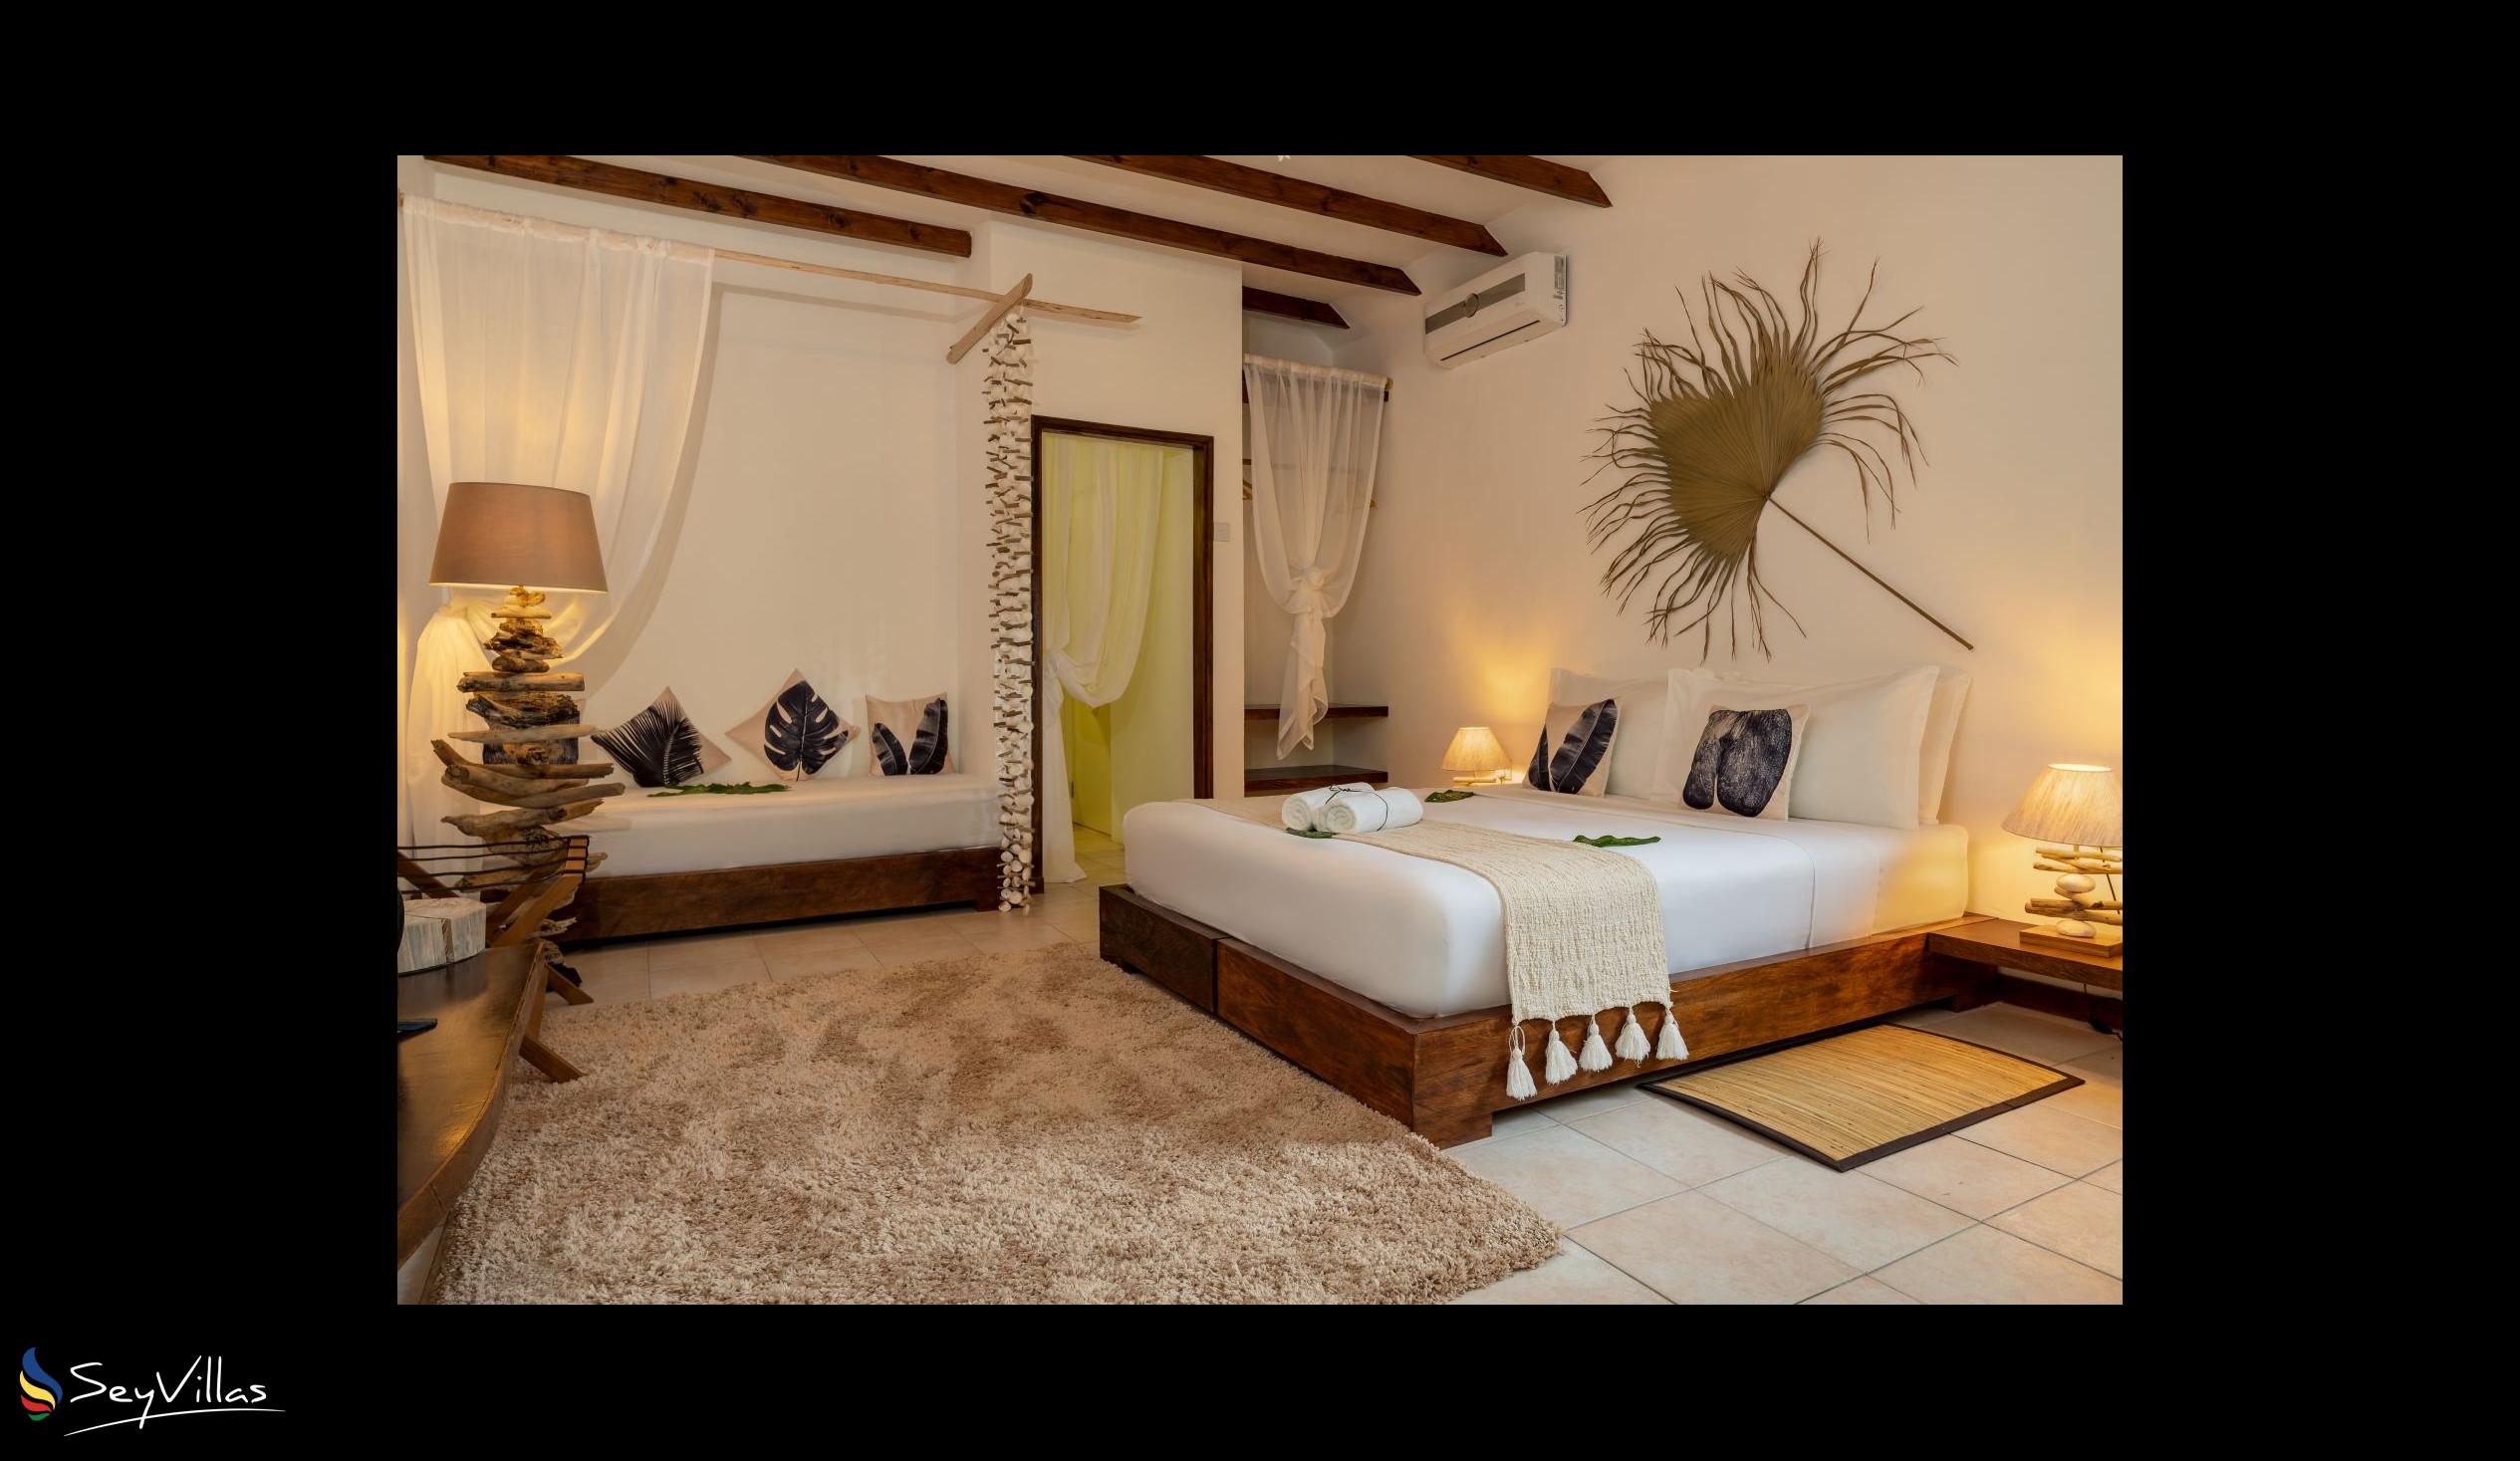 Photo 46: Bliss Hotel Praslin - Eden Garden - Superior Room - Praslin (Seychelles)